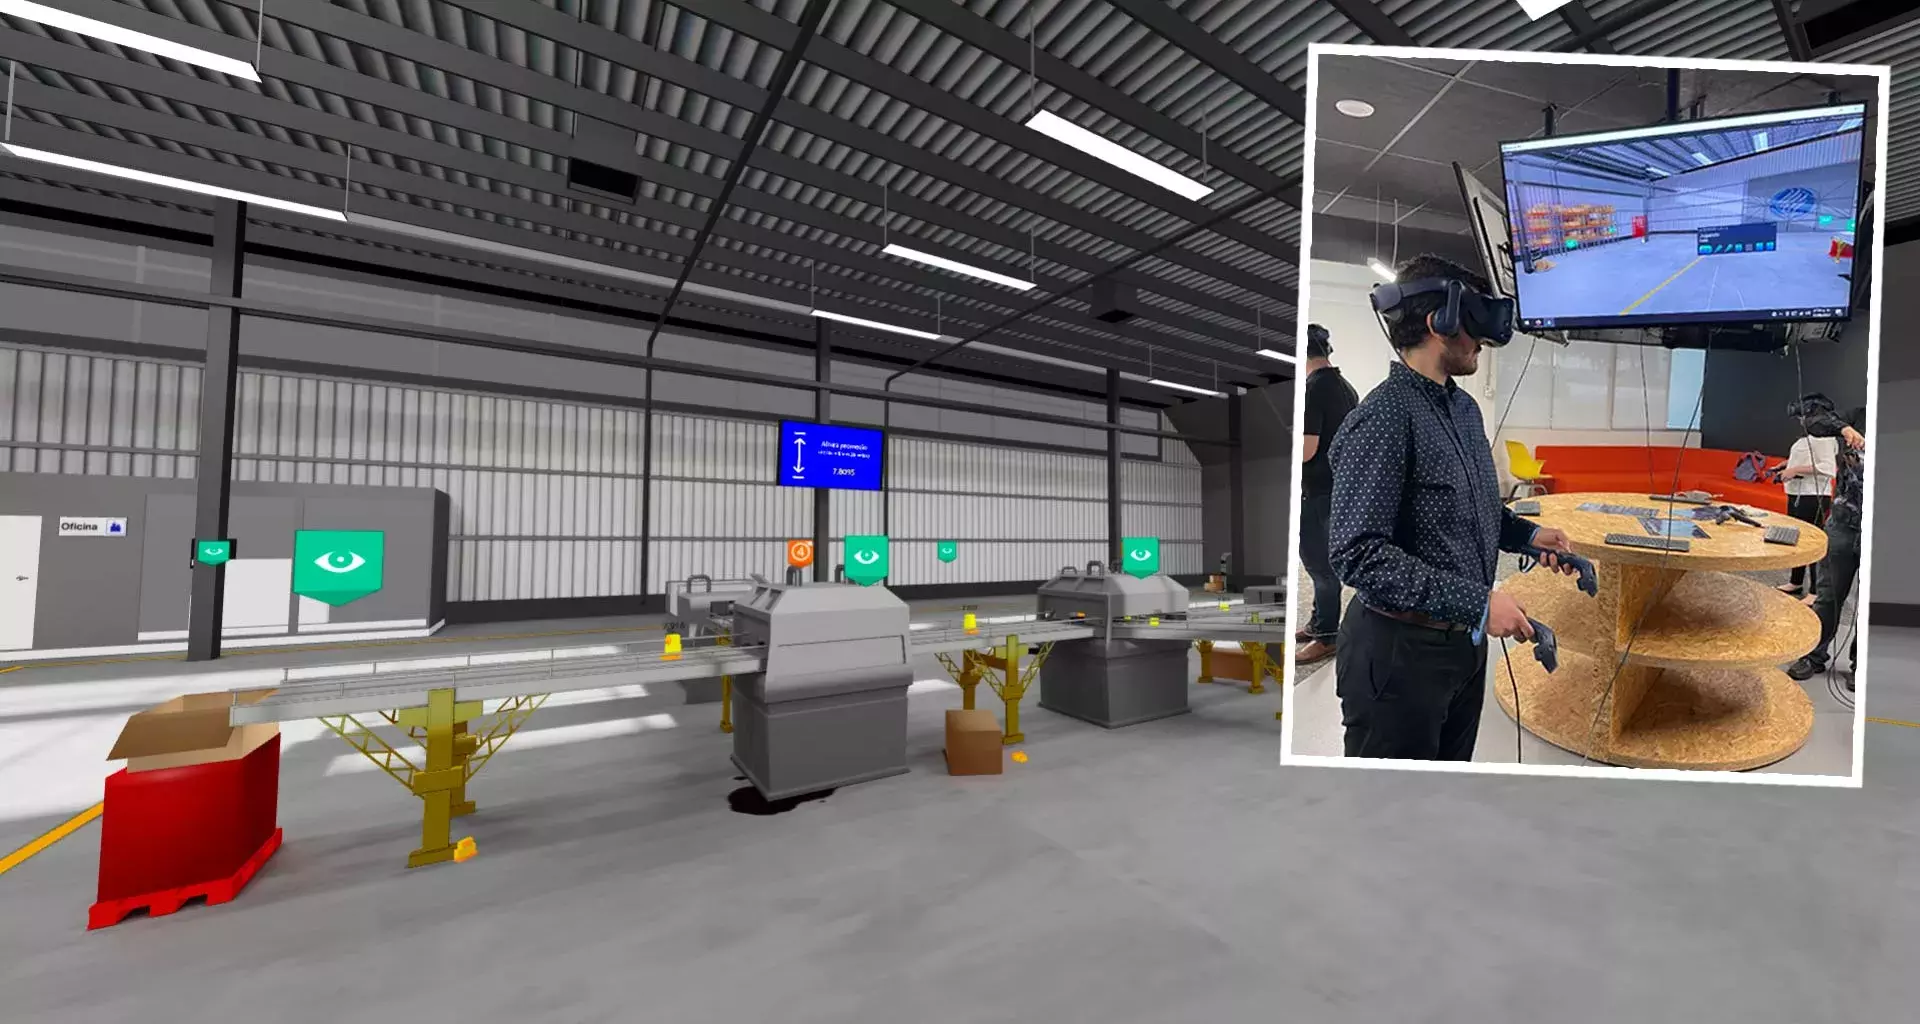 Profesores de Educación Digital desarrollaron una planta de realidad virtual para estudiantes de ingeniería.